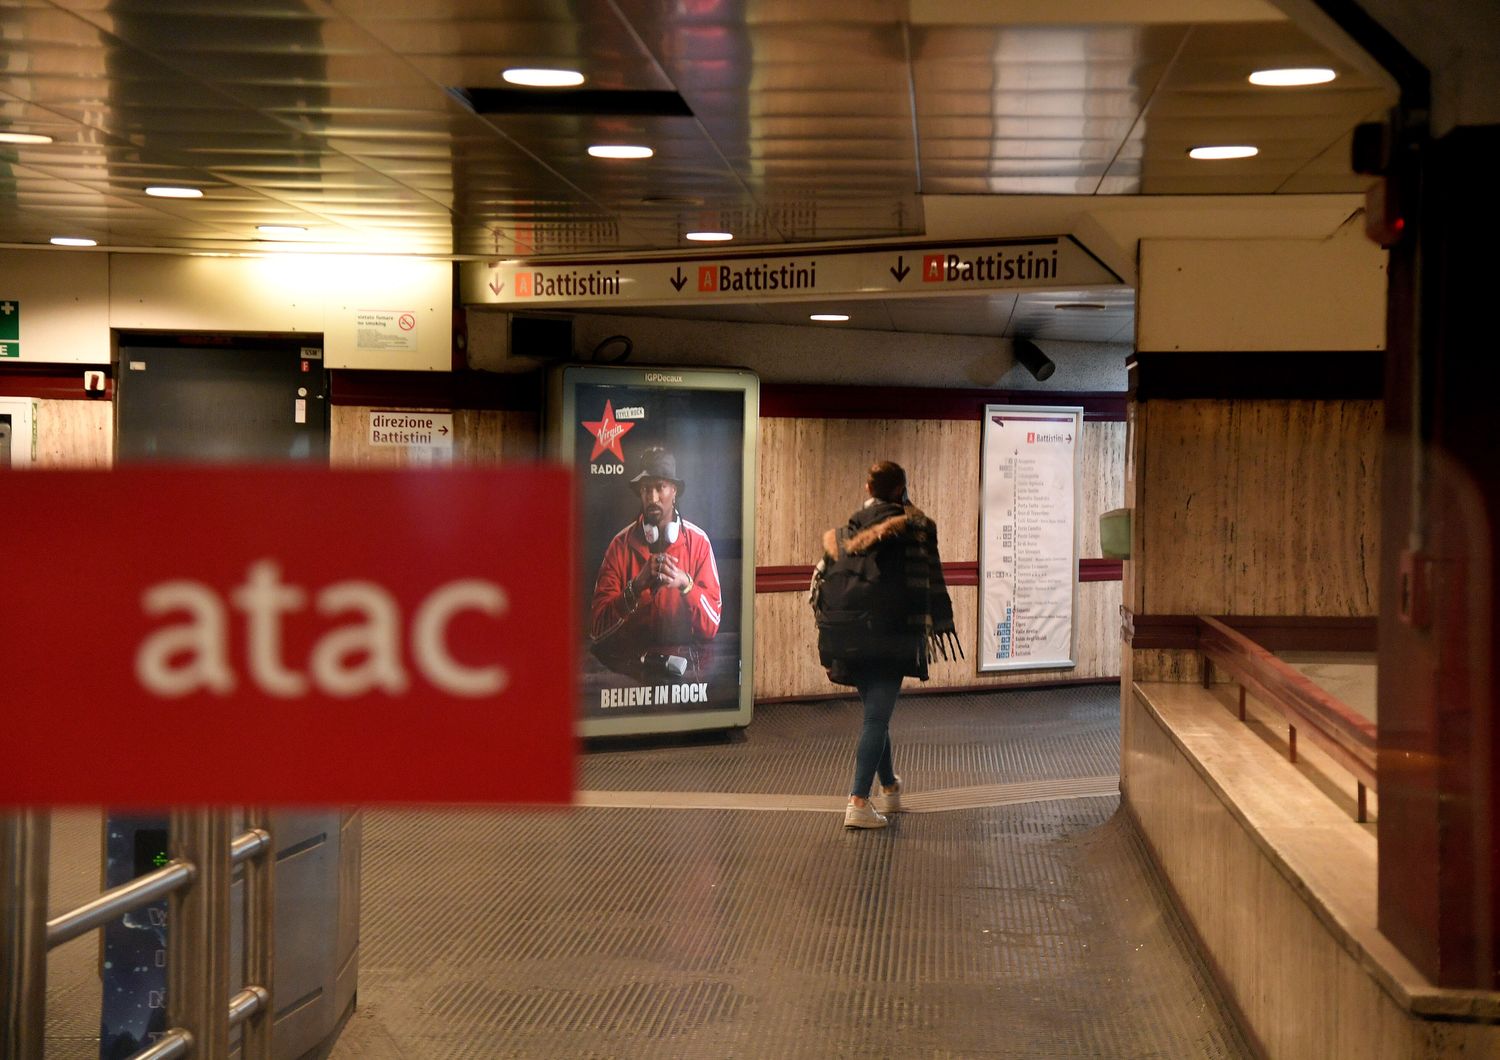 Stazione metro a Roma - Atac